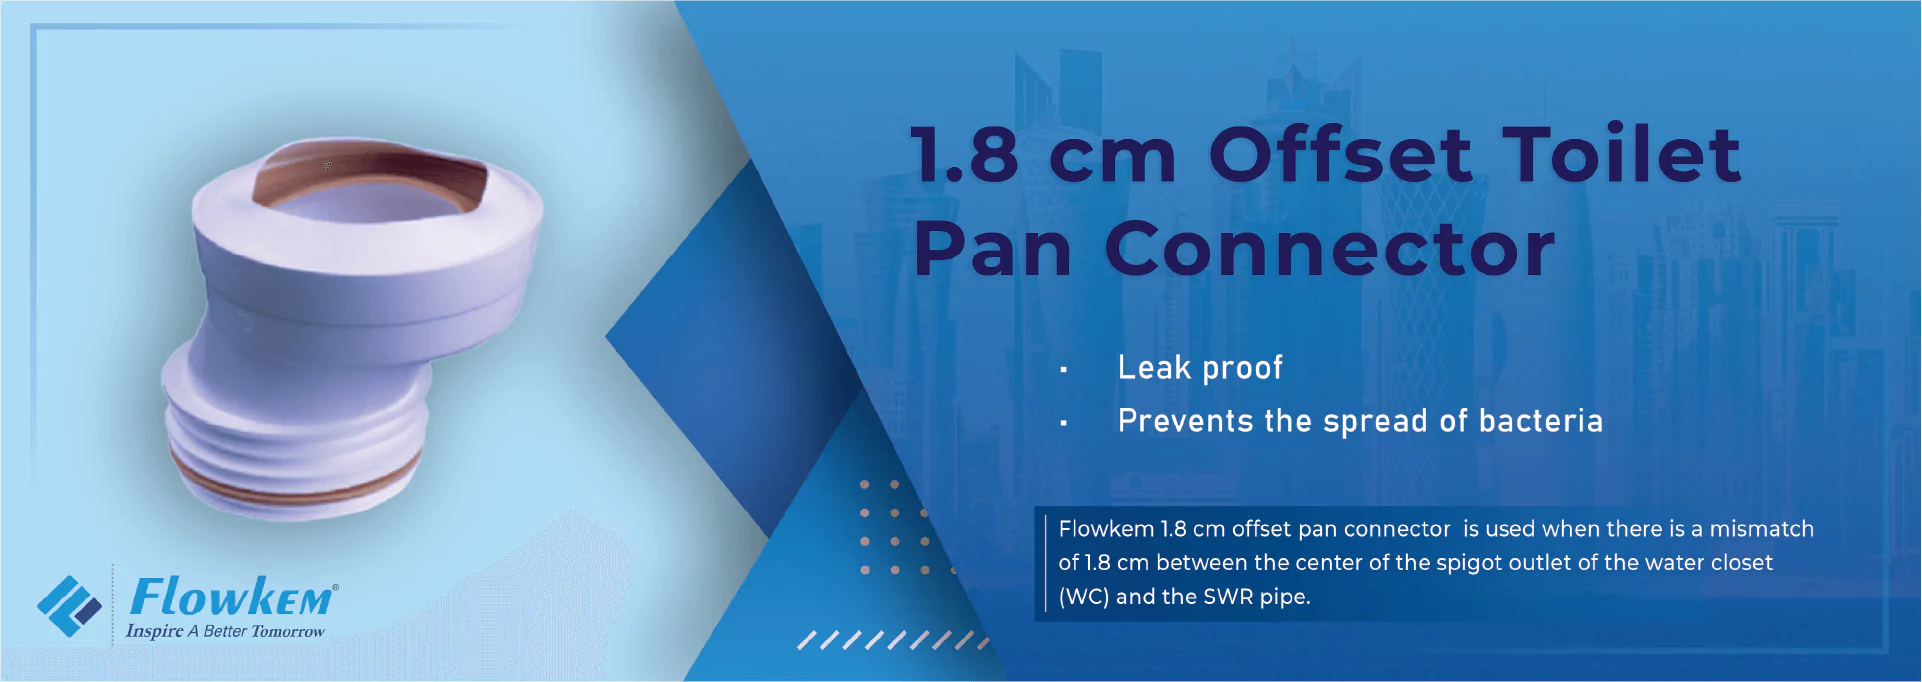 Flowkem Toilet Pan Connectors 1.8 cm